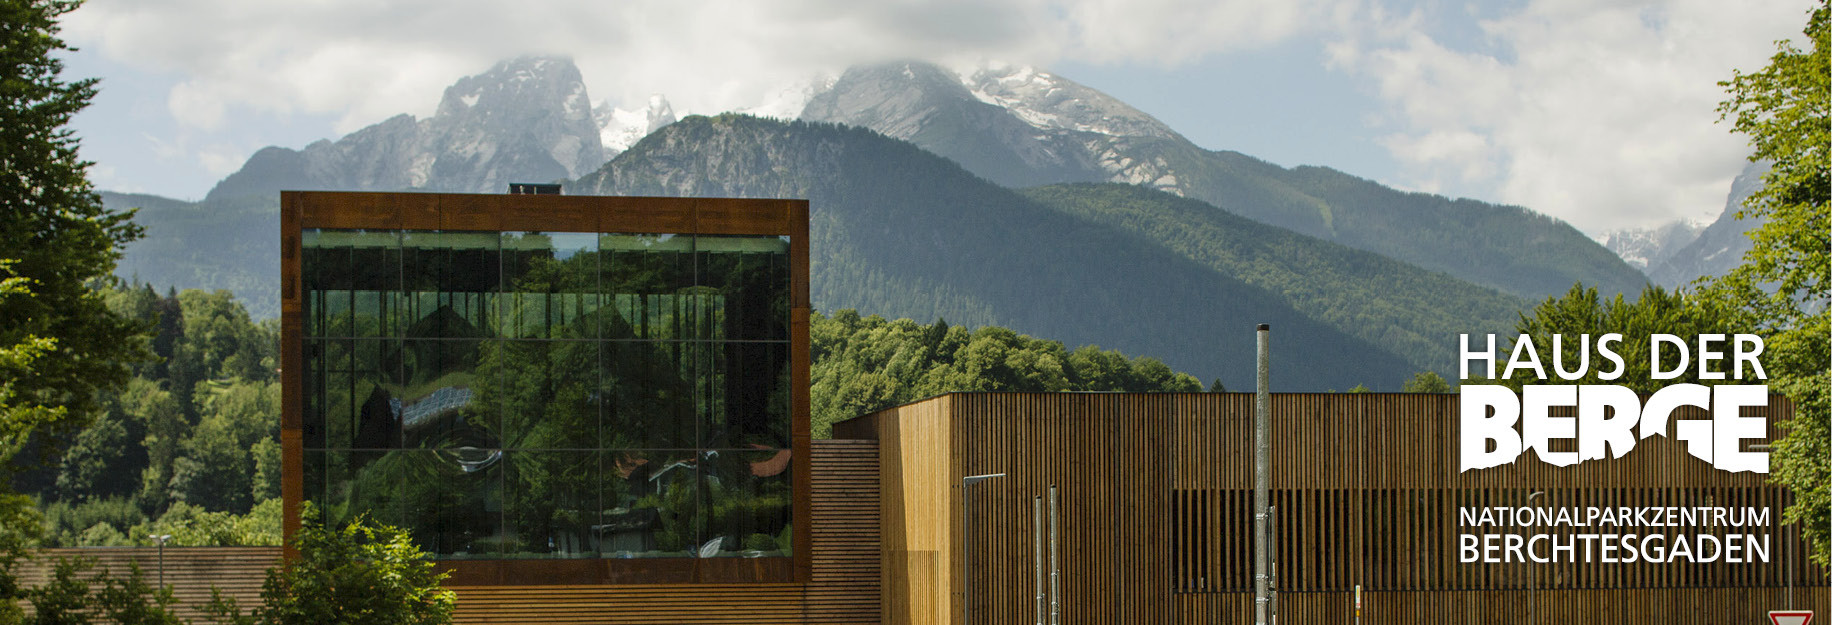 Haus Der Berge
 Nationalparkzentrum Haus der Berge in Berchtesgaden